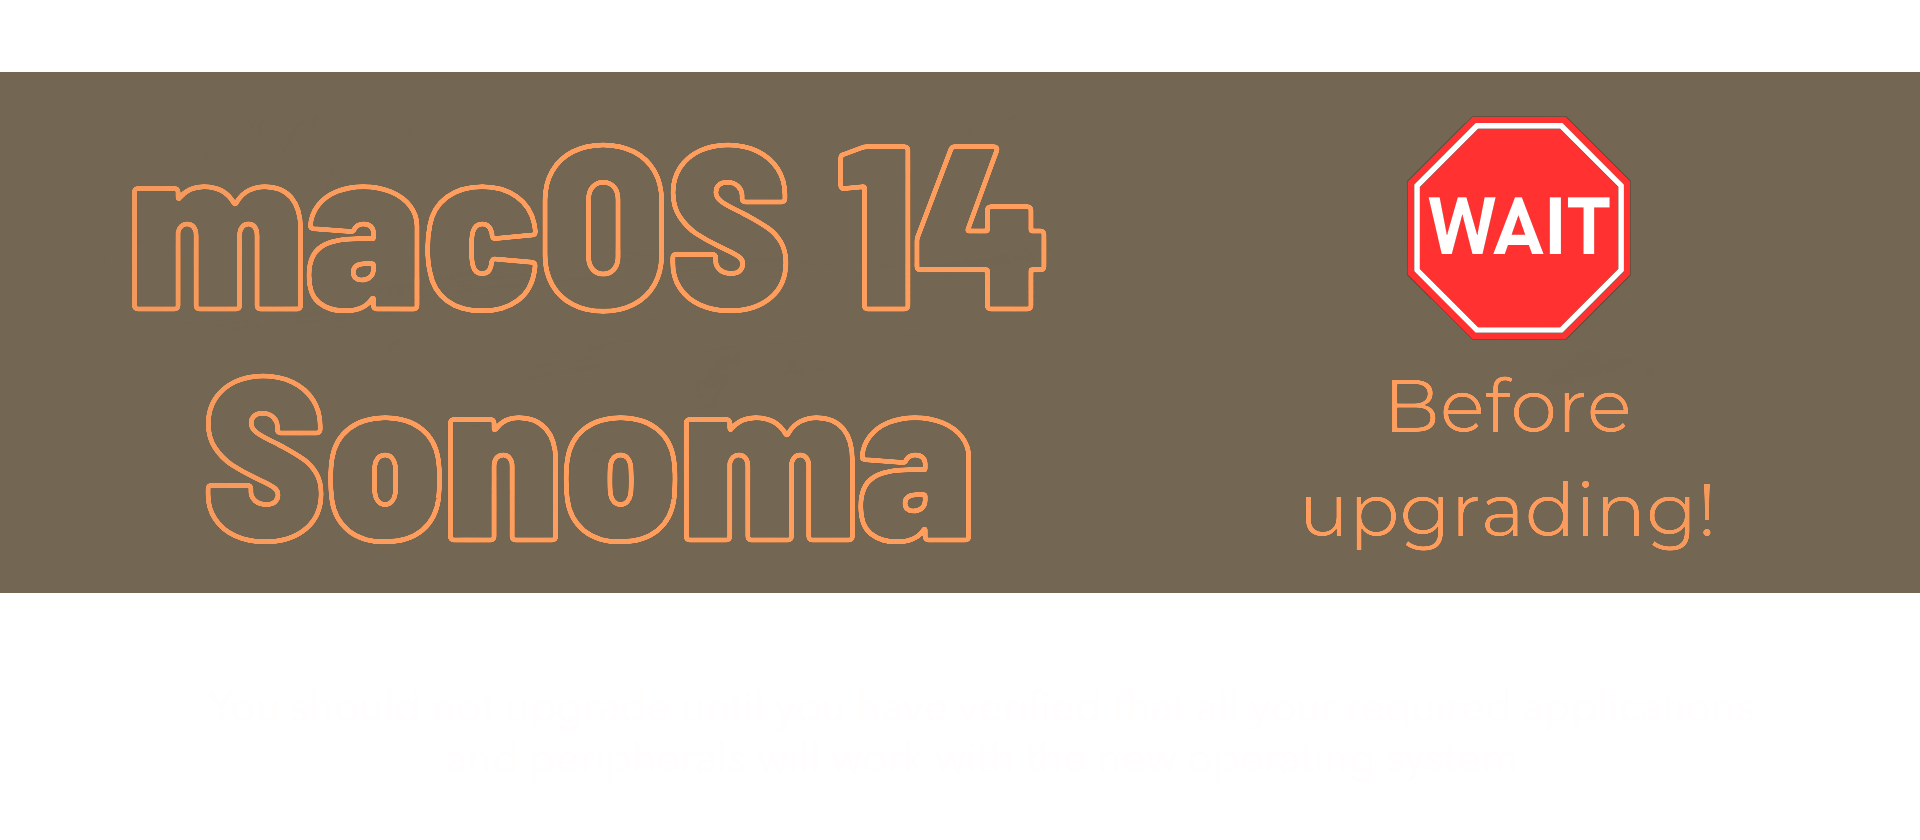 MacOS14 Sonoma, wait before upgrading!